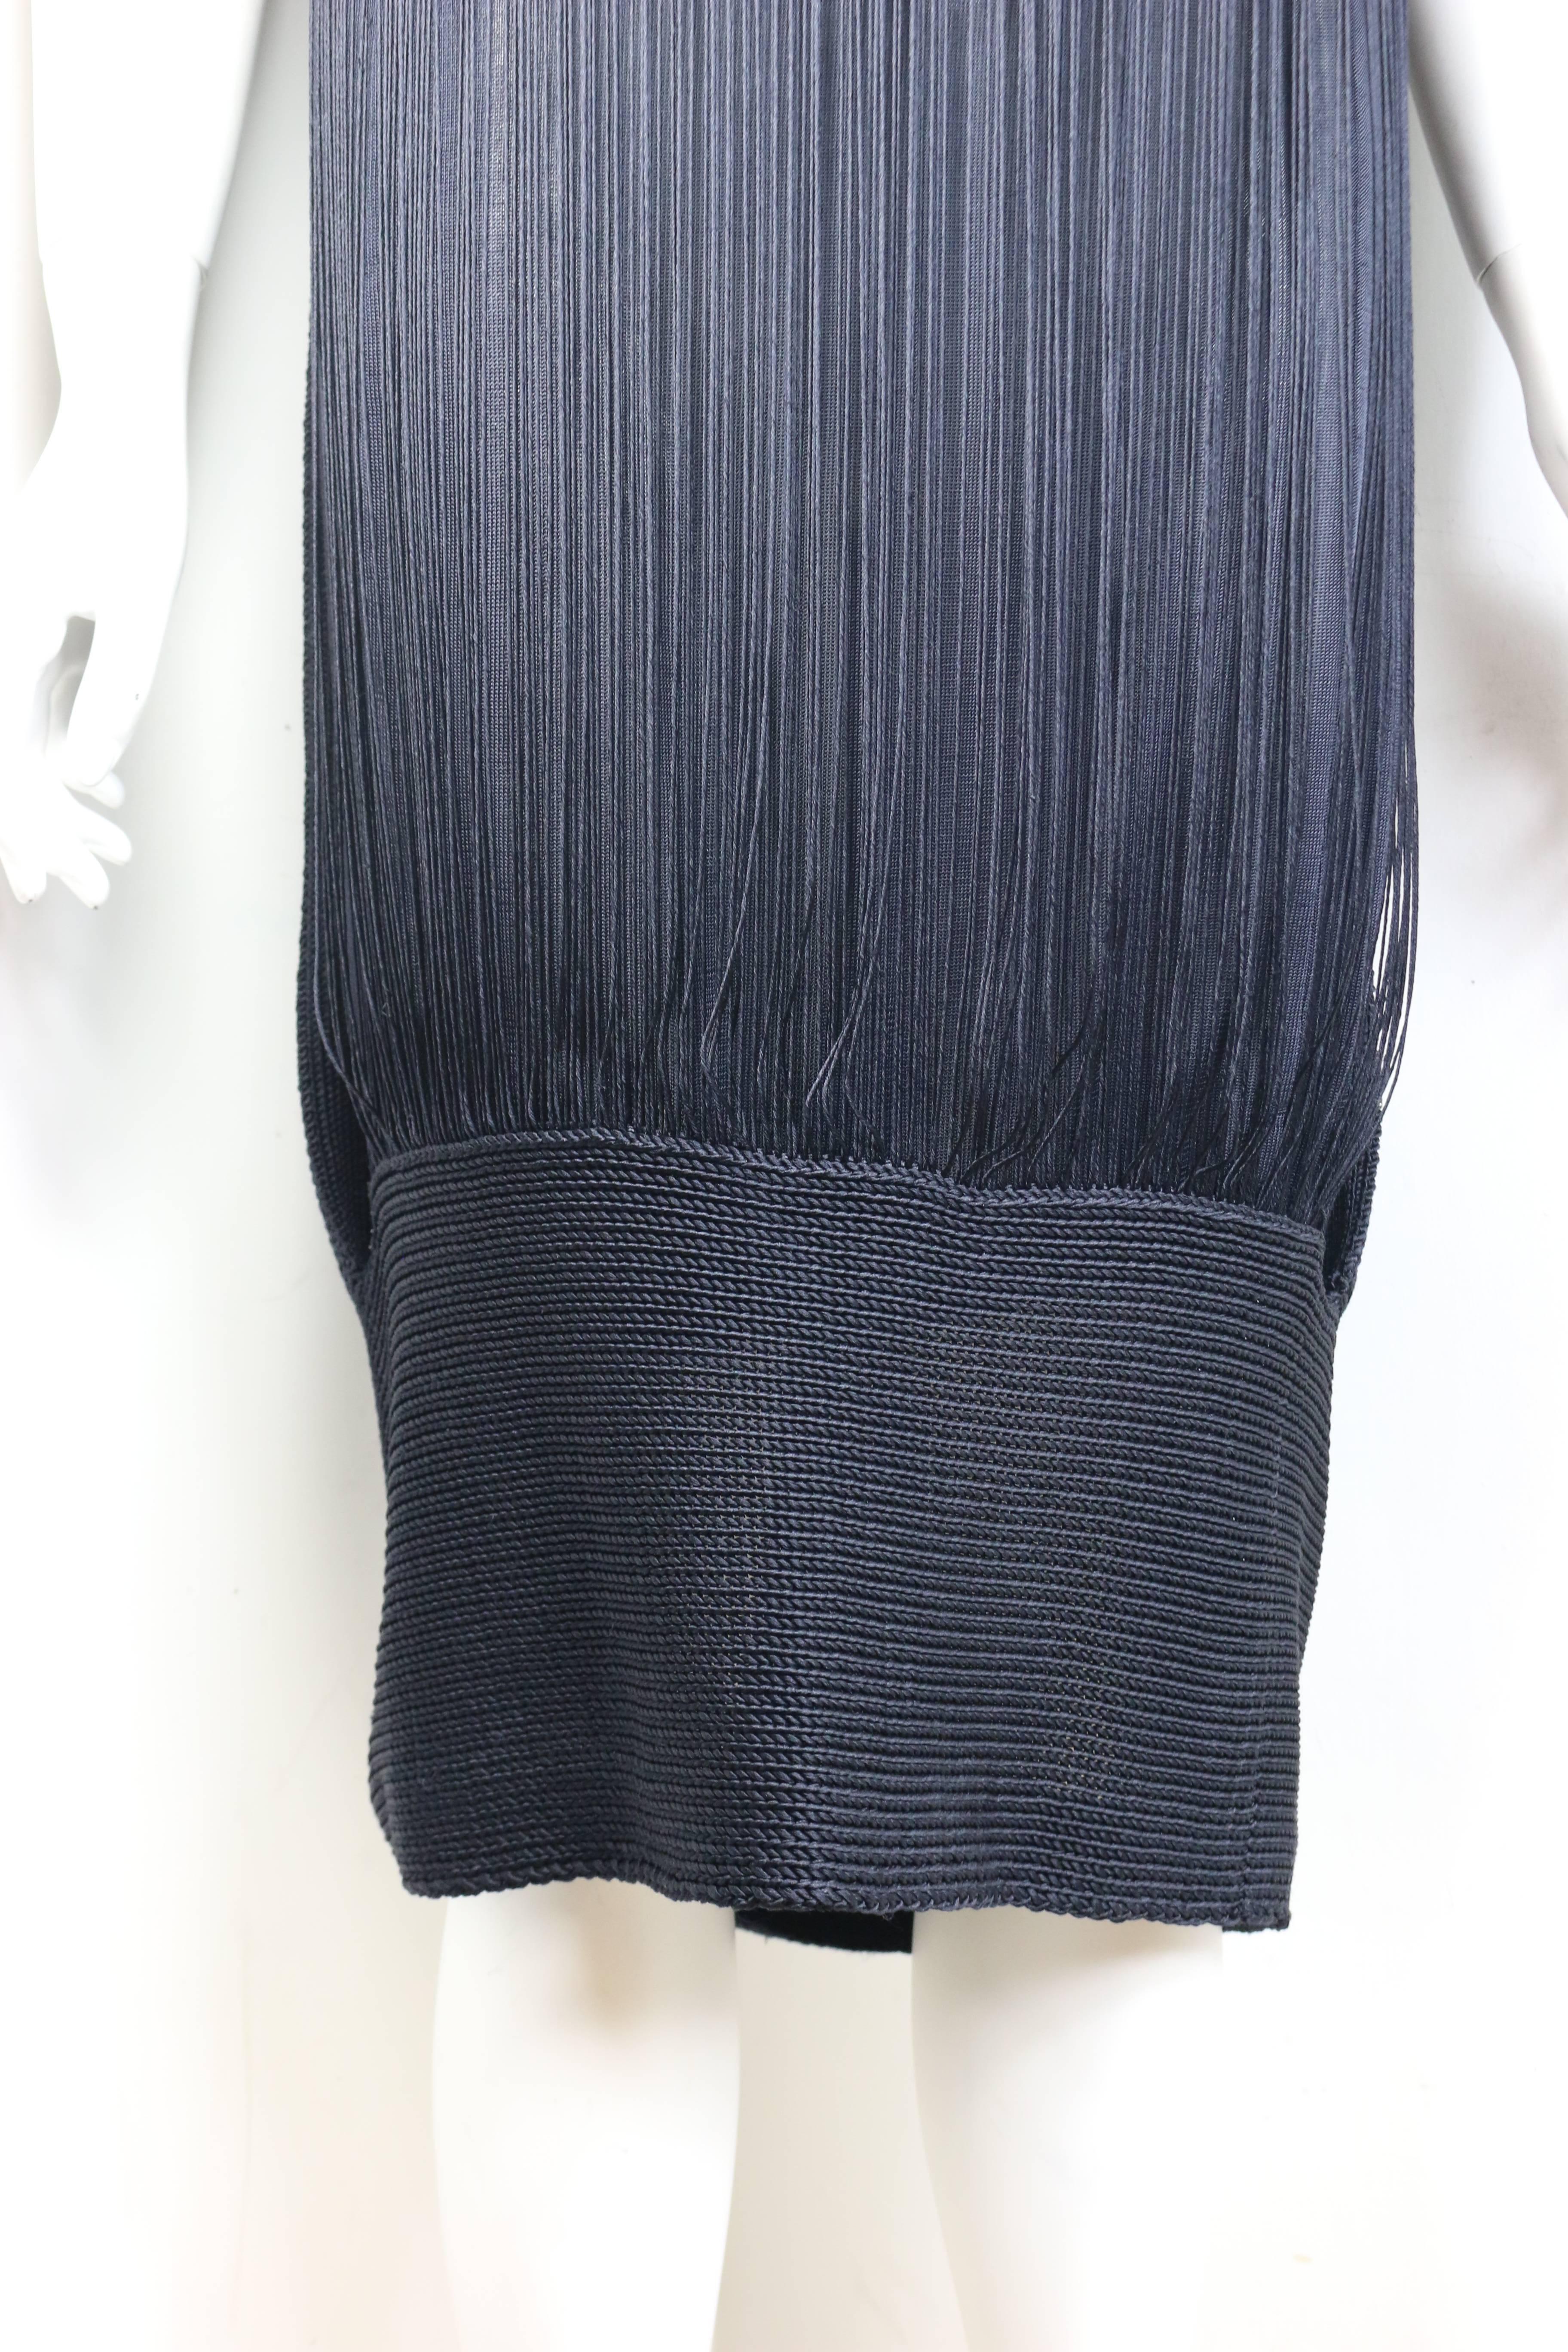 Black Jil Sander Navy Knitted with Fringe Dress